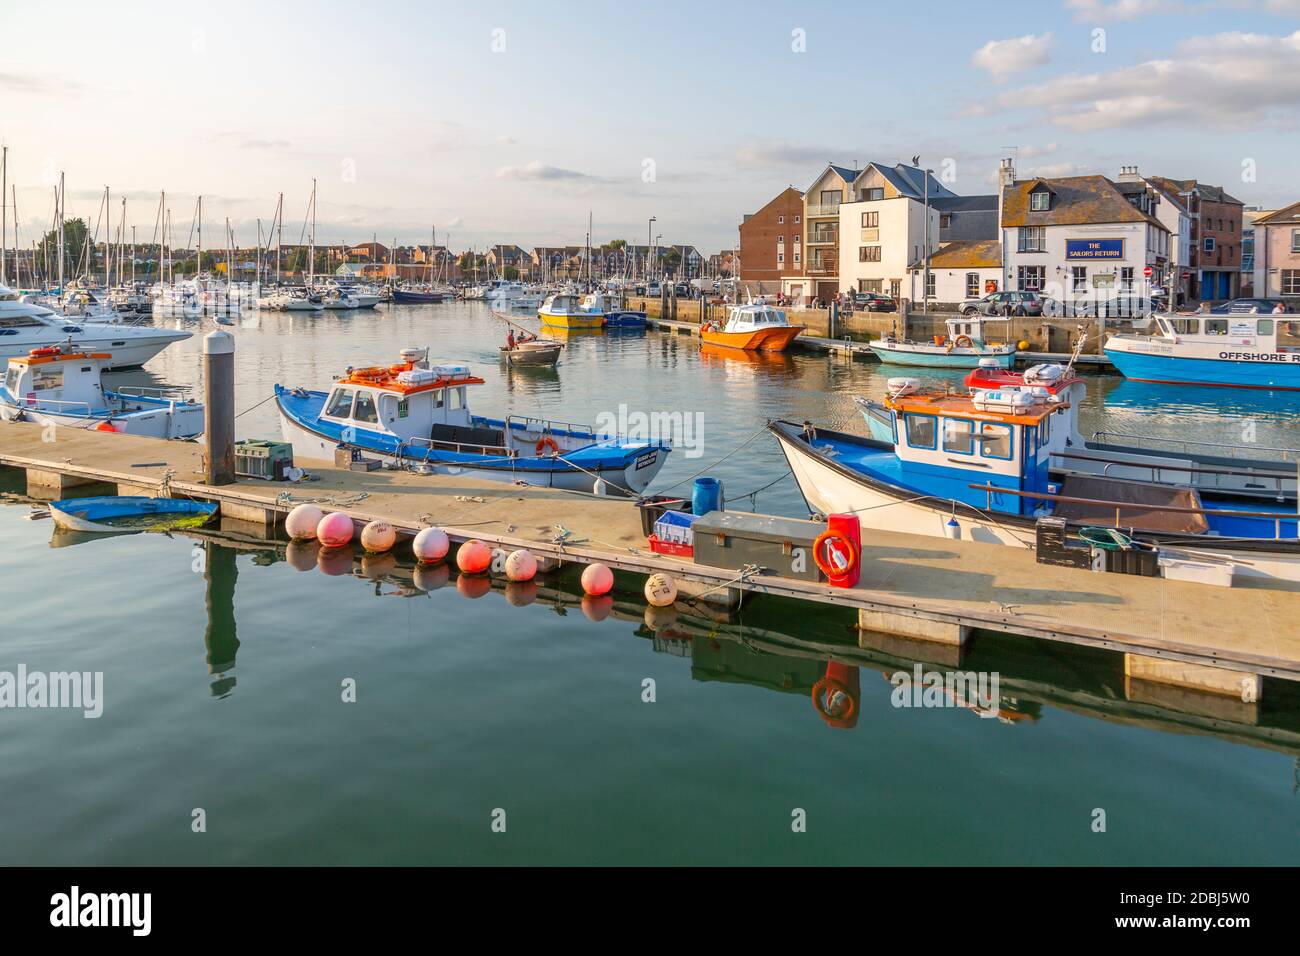 Vue sur les bateaux du port et les maisons de quai, Weymouth, Dorset, Angleterre, Royaume-Uni, Europe Banque D'Images